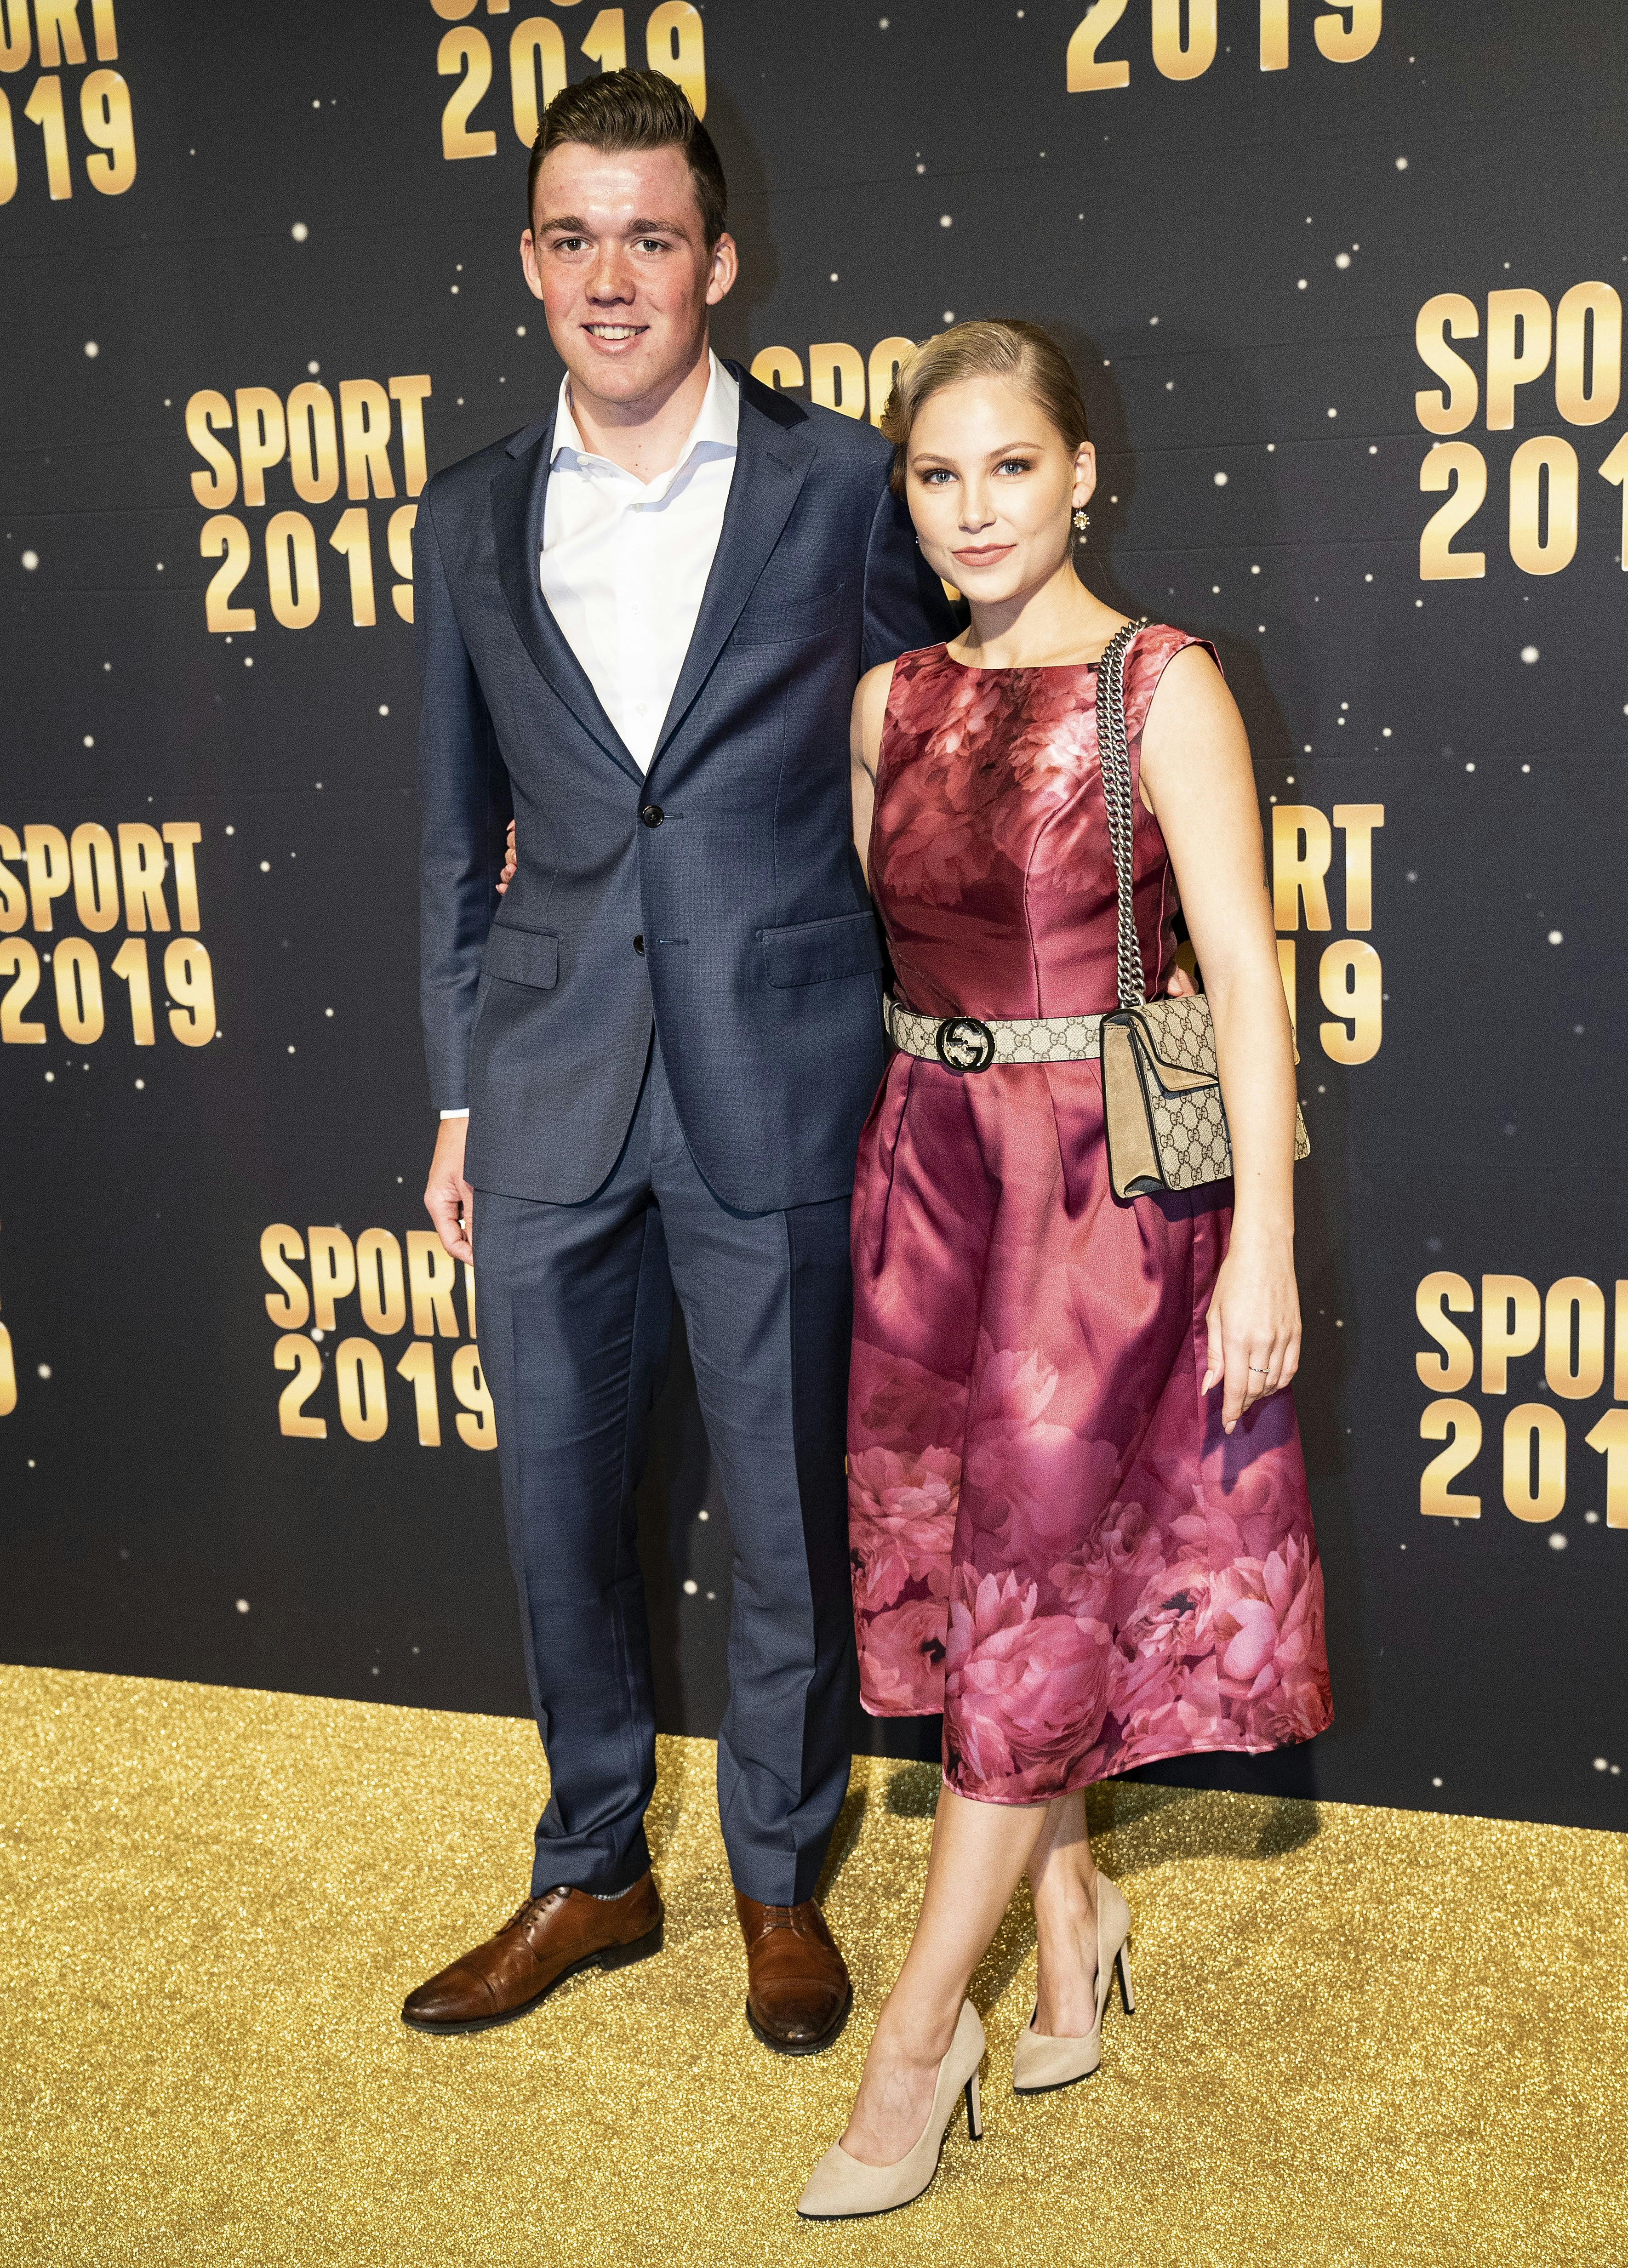 Mads Pedersen og Lisette Dam Pedersen ved "Sport 2019", hvor cykelrytteren blev kåret til "Årets sportsnavn".&nbsp;
